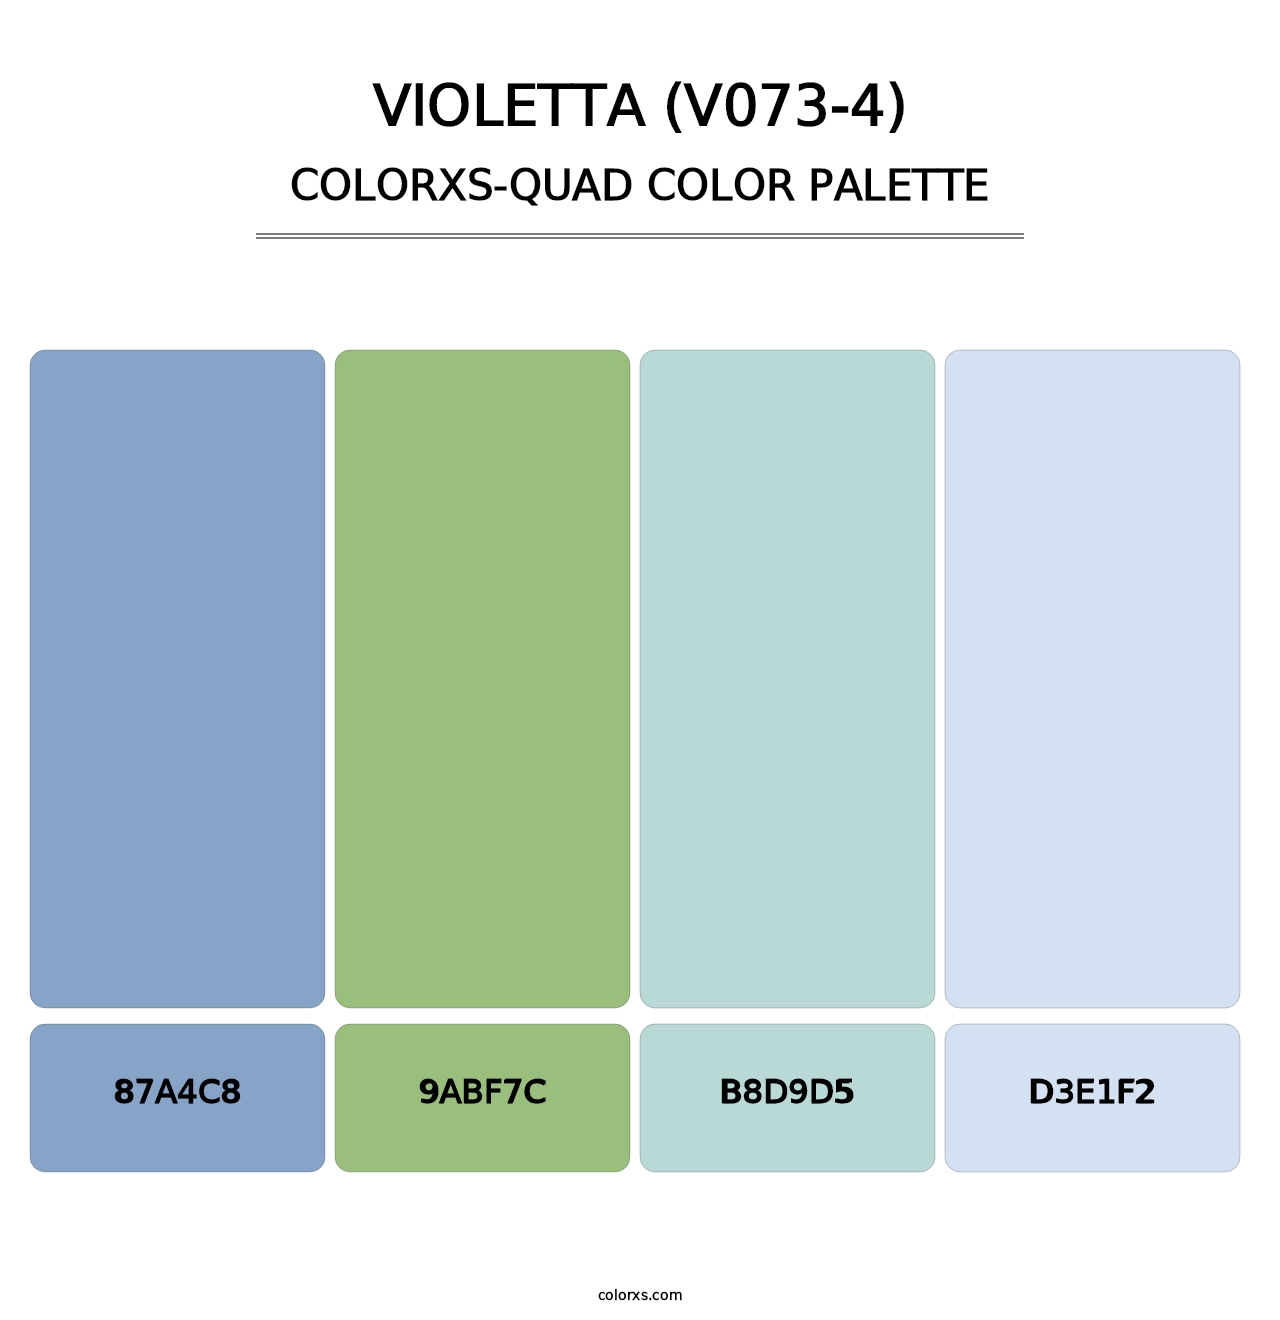 Violetta (V073-4) - Colorxs Quad Palette